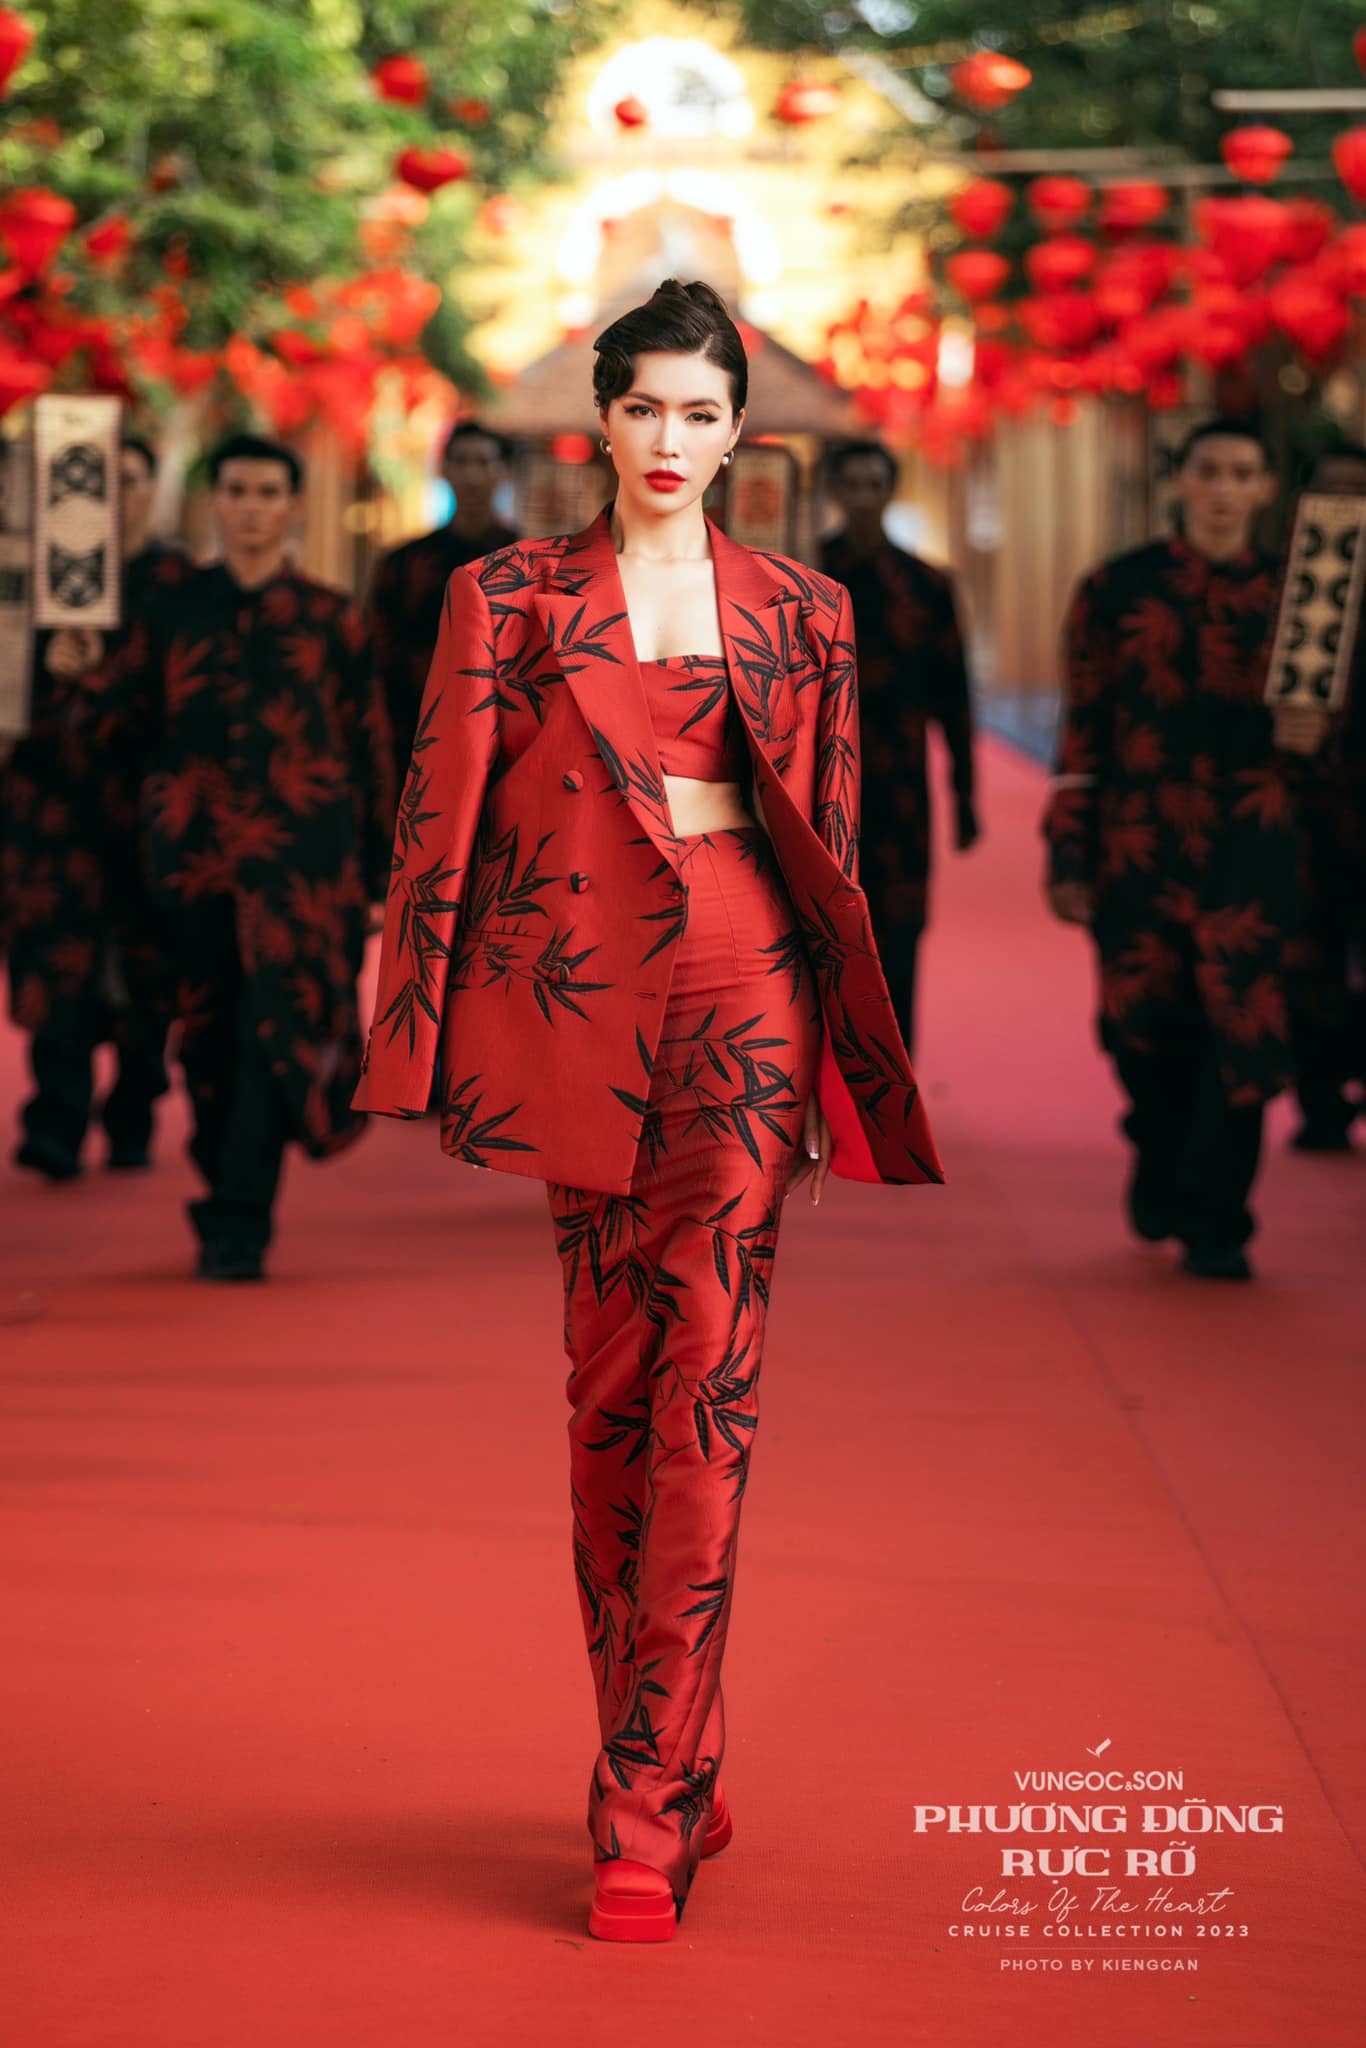 'Rừng' hoa hậu đổ bộ trên thảm đỏ Hội An dự show thời trang - Ảnh 3.